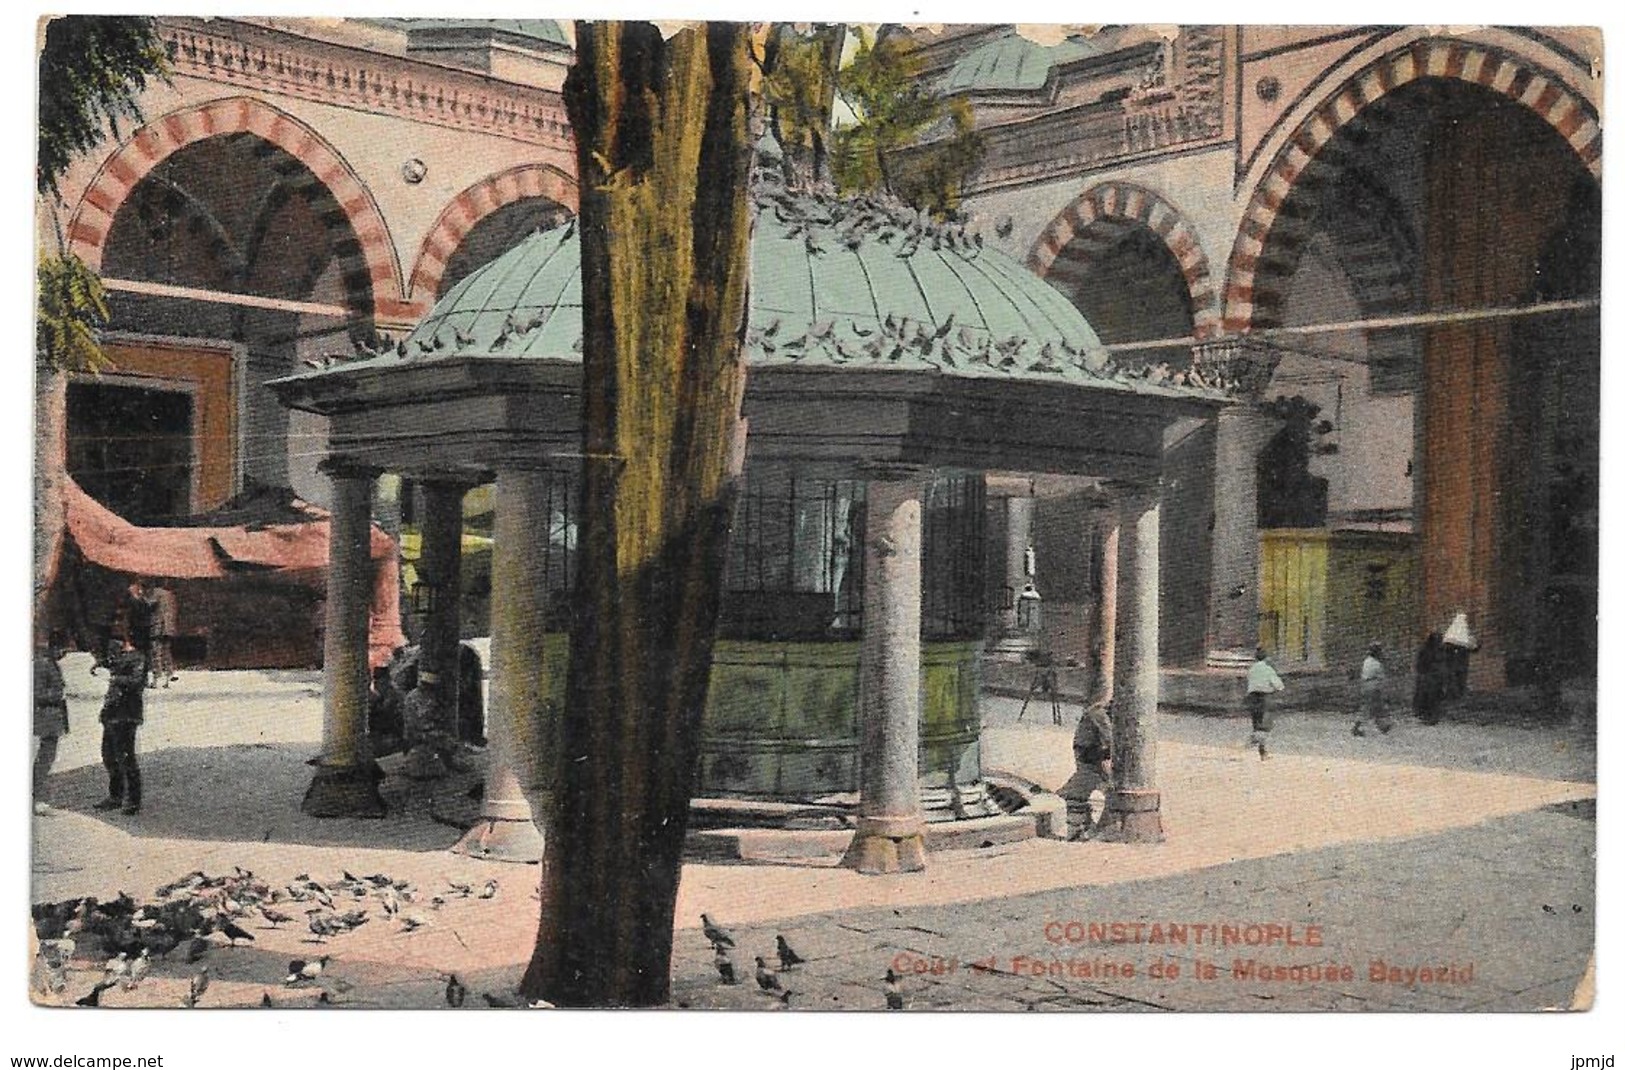 CONSTANTINOPLE - Cour Et Fontaine De La Mosquée Bayazid - N° 8086 - 1919 - Colorisée - Turquie